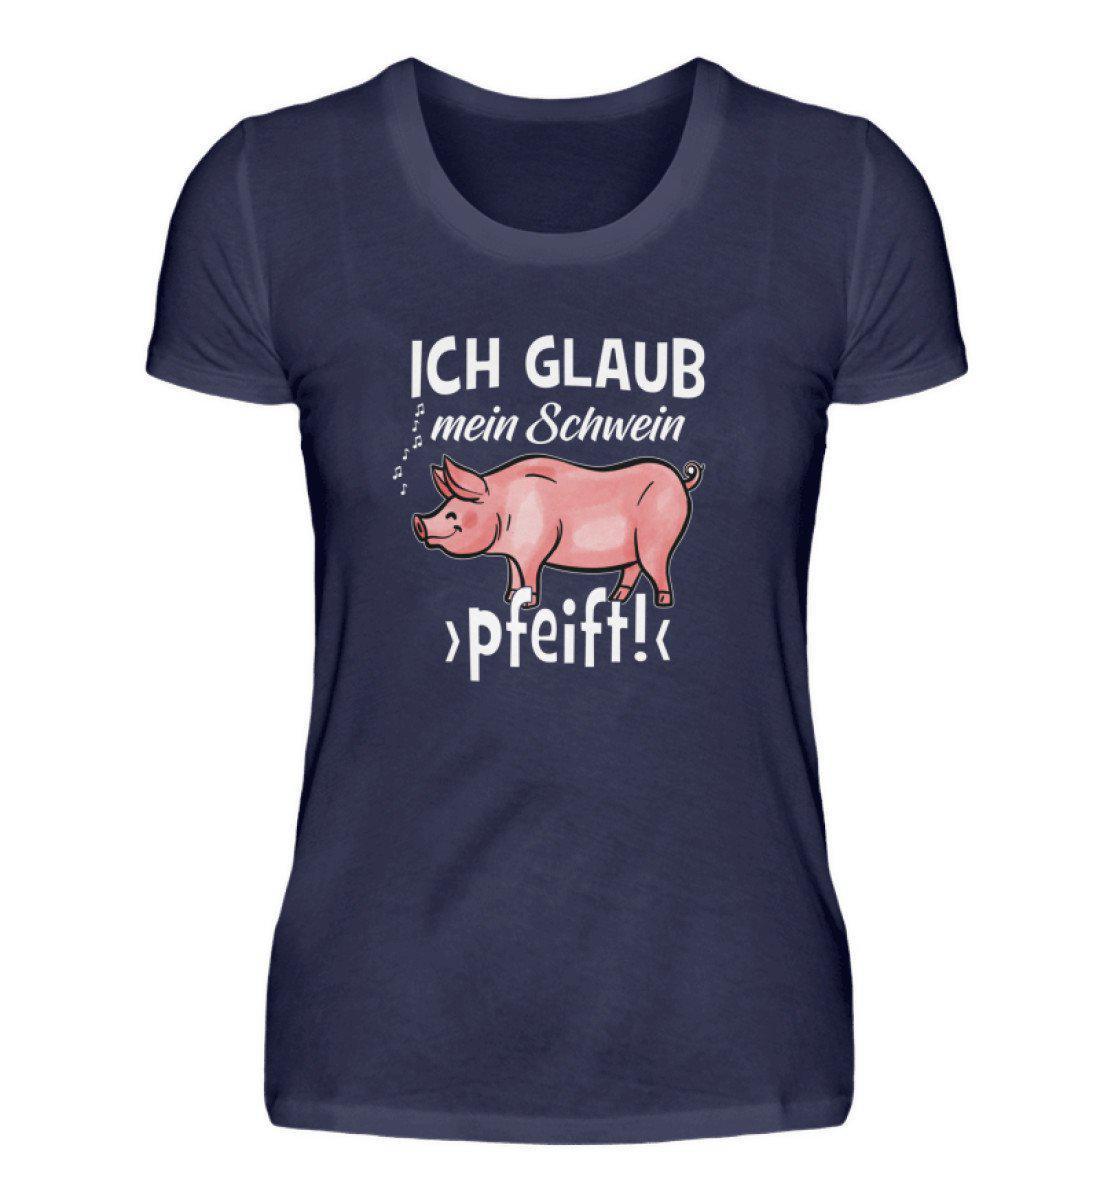 Ich glaub mein Schwein pfeift · Damen T-Shirt-Damen Basic T-Shirt-Navy-S-Agrarstarz